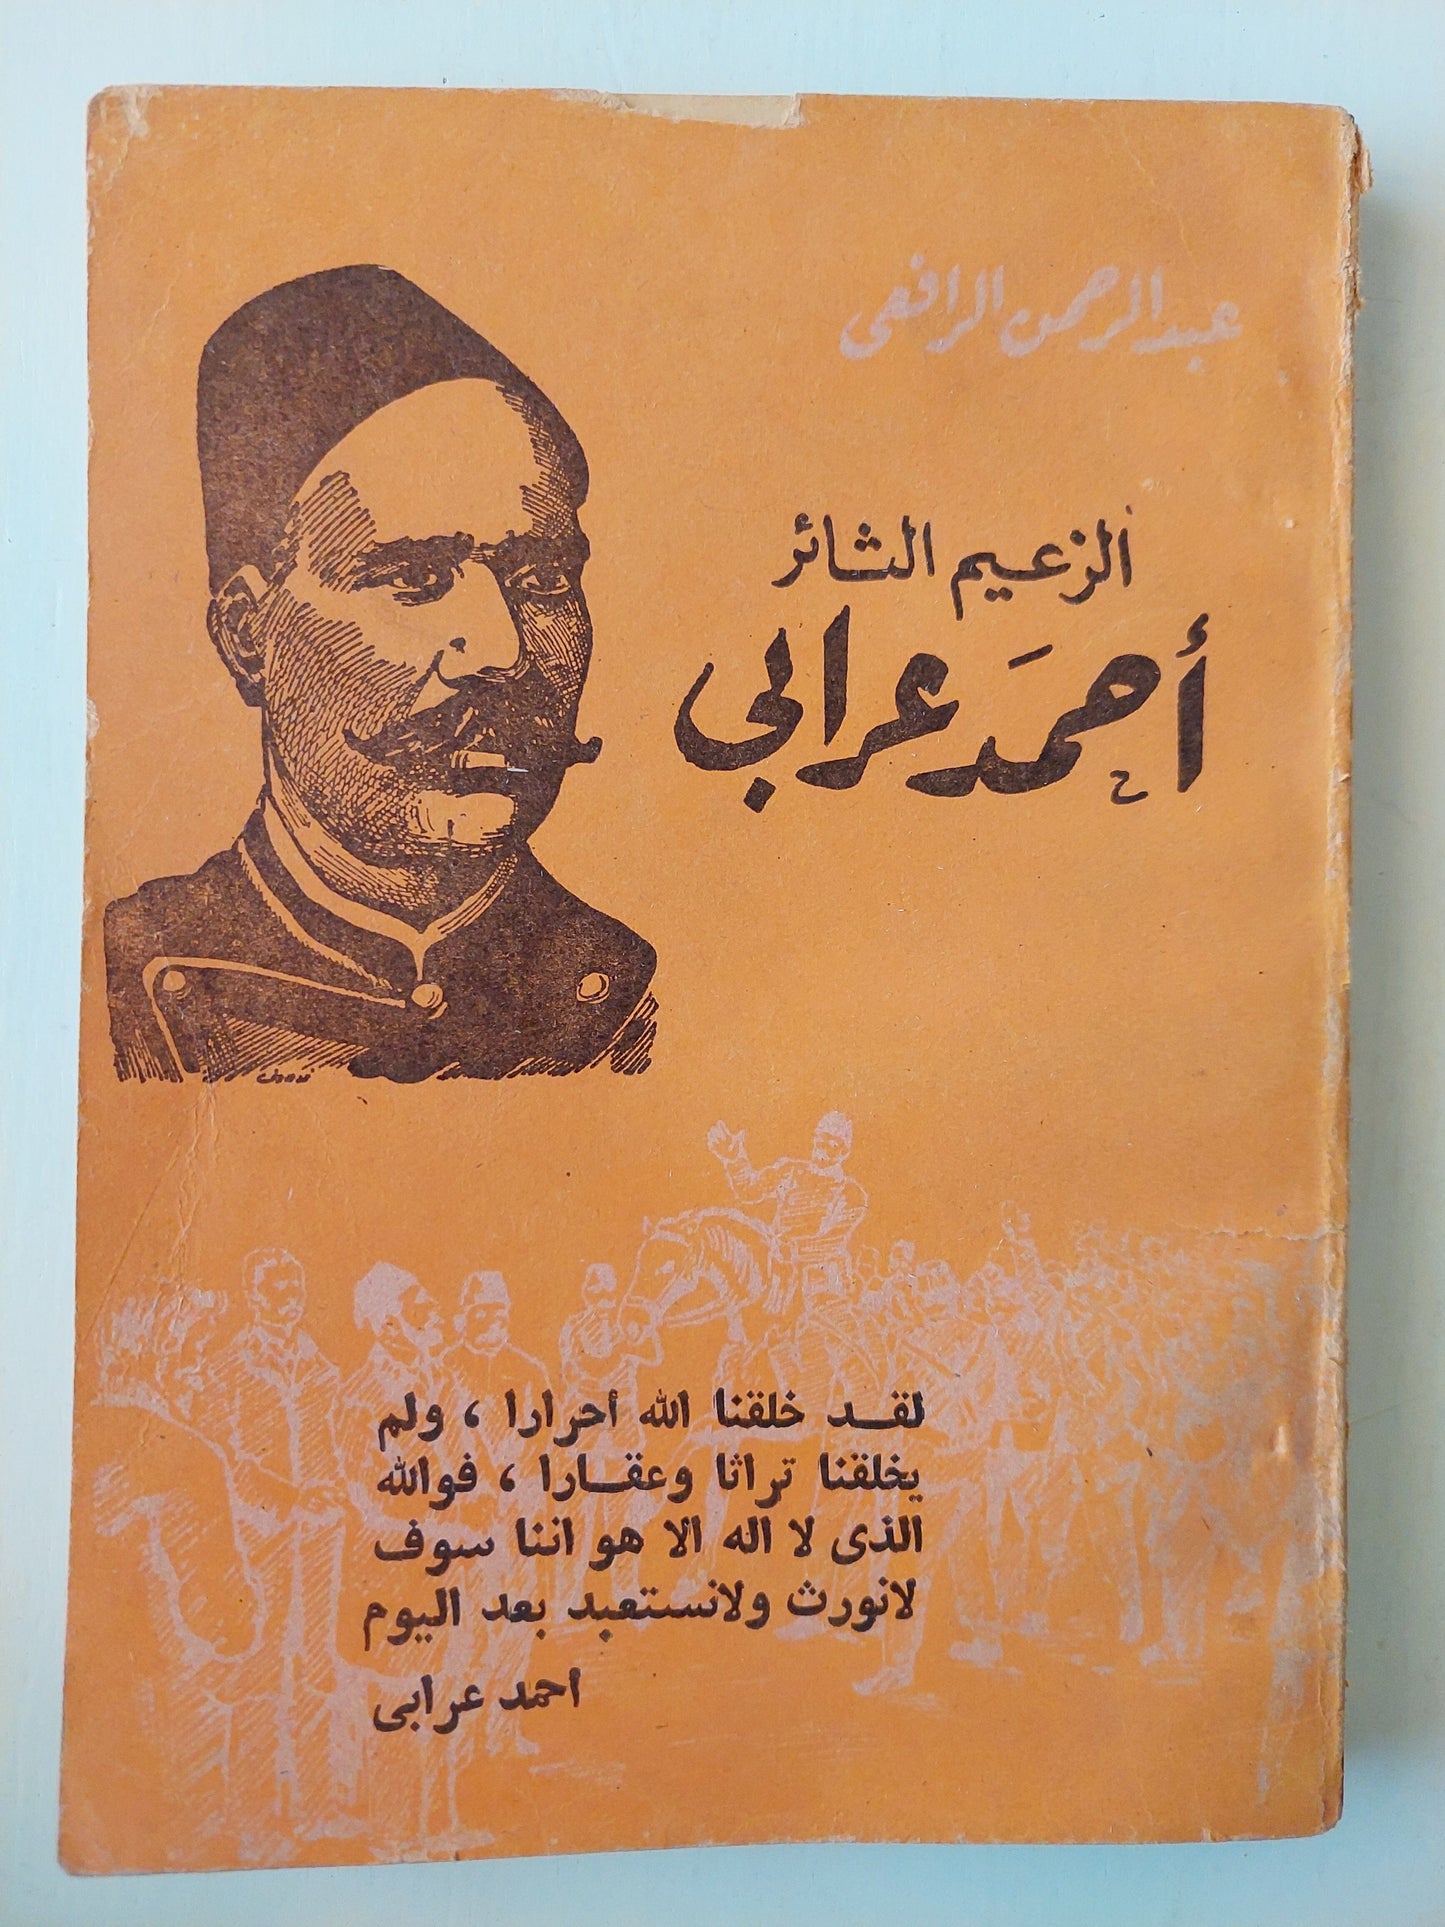 الزعيم الثائر أحمد عرابي - عبد الرحمن الرافعي كتاب المكتبة الفلسفية 